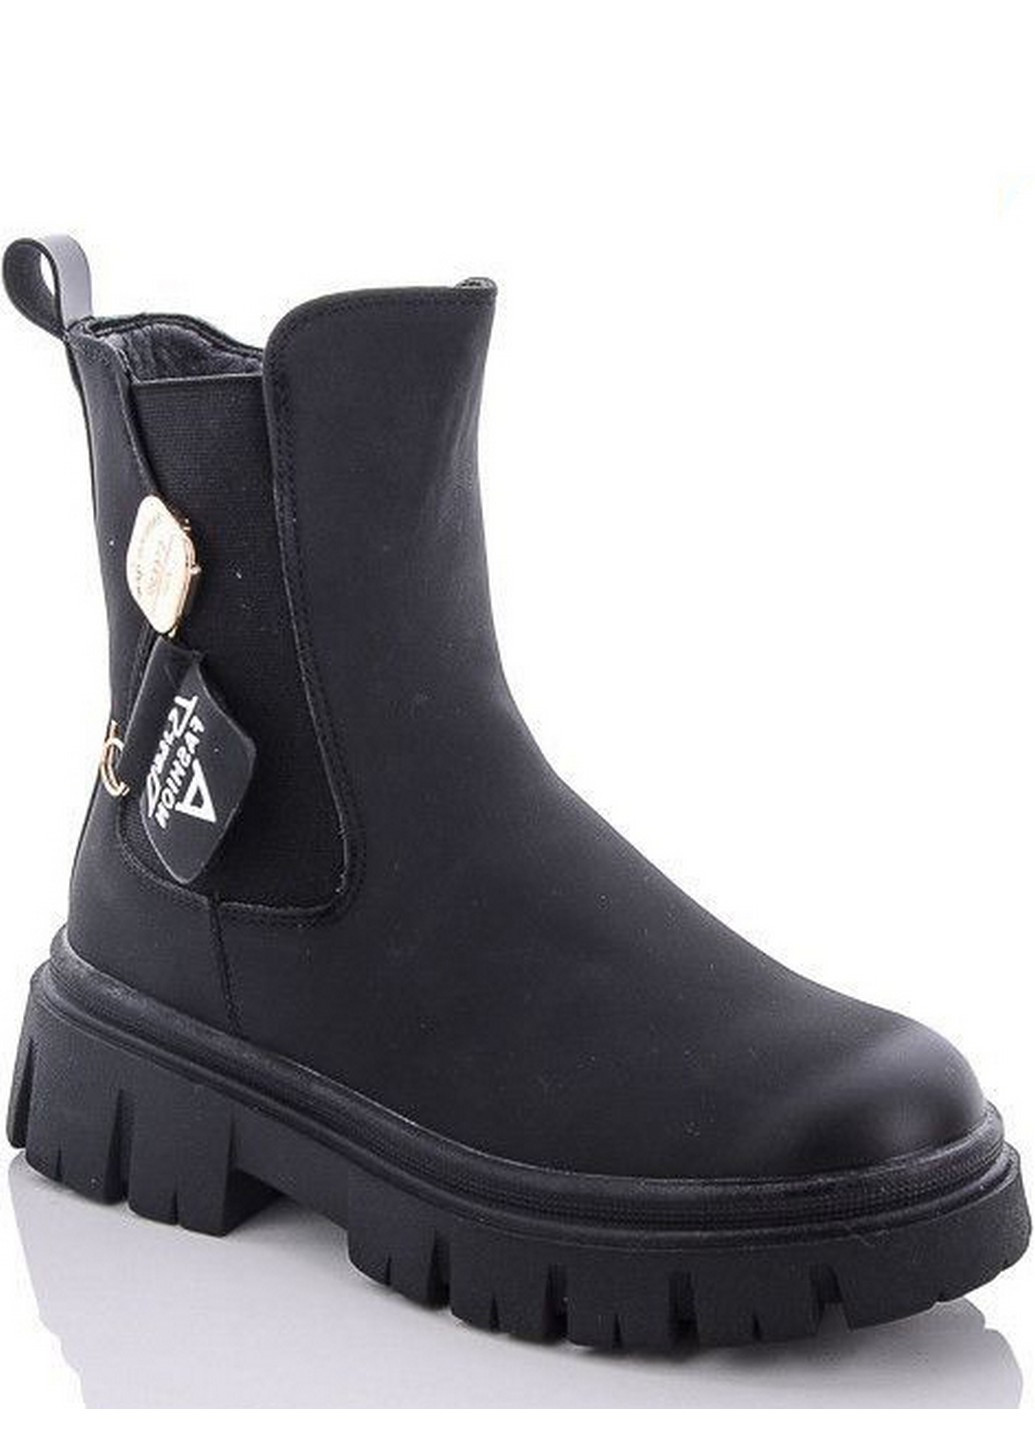 Черные кэжуал осенние зимние ботинки на овчине n40235-30 Jong Golf